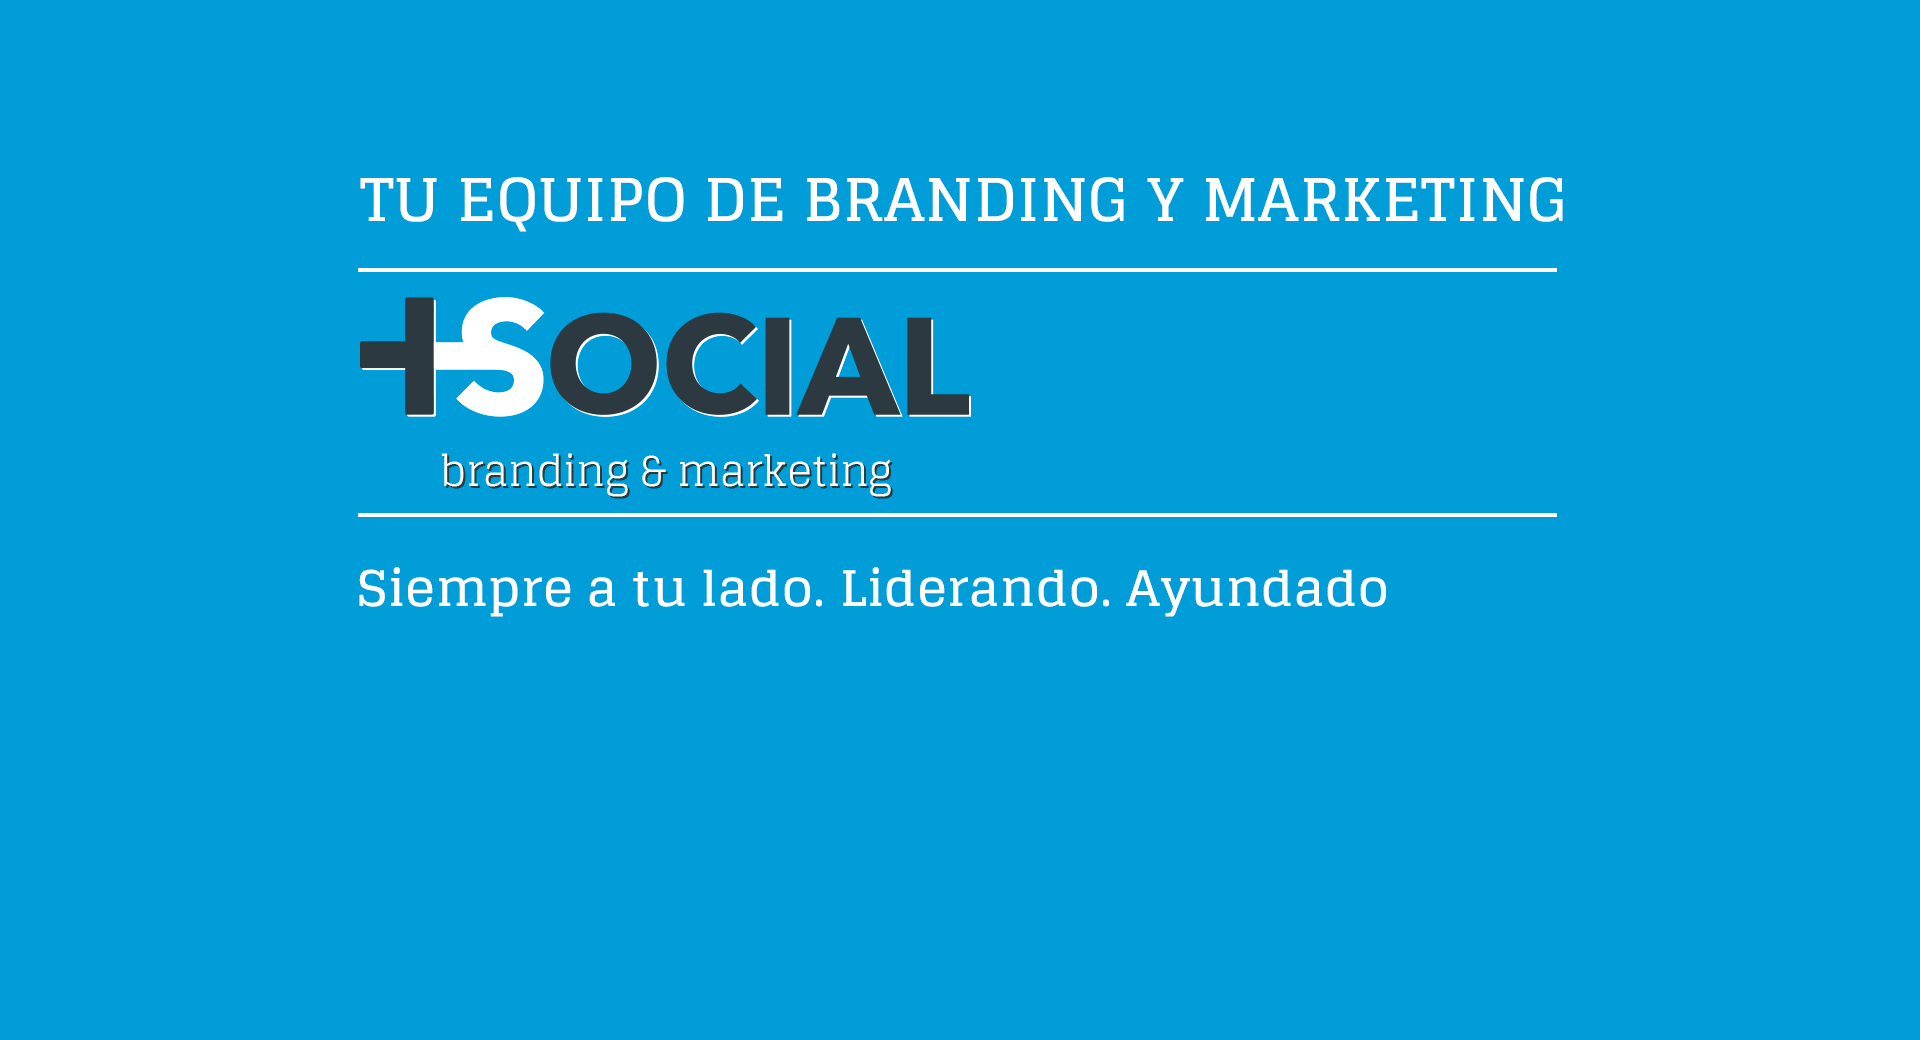 massocial: social media marketing